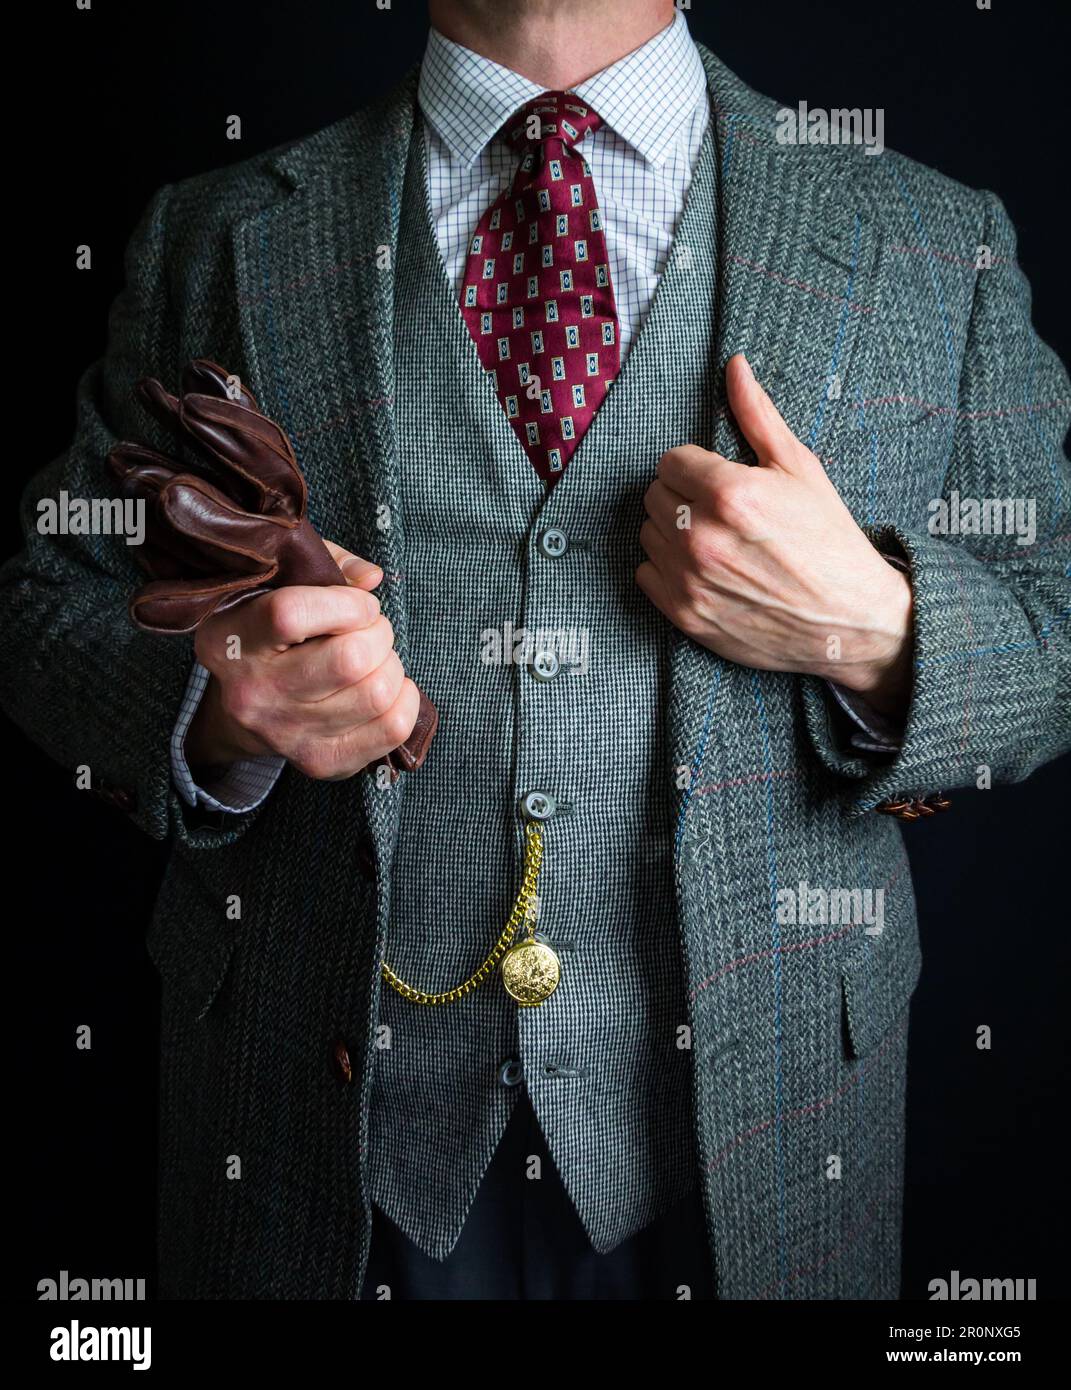 Portrait de l'homme élégant en costume en tweed tenant des gants en cuir dans l'attitude de Carefree. Style vintage et mode élégante du gentleman britannique classique. Banque D'Images